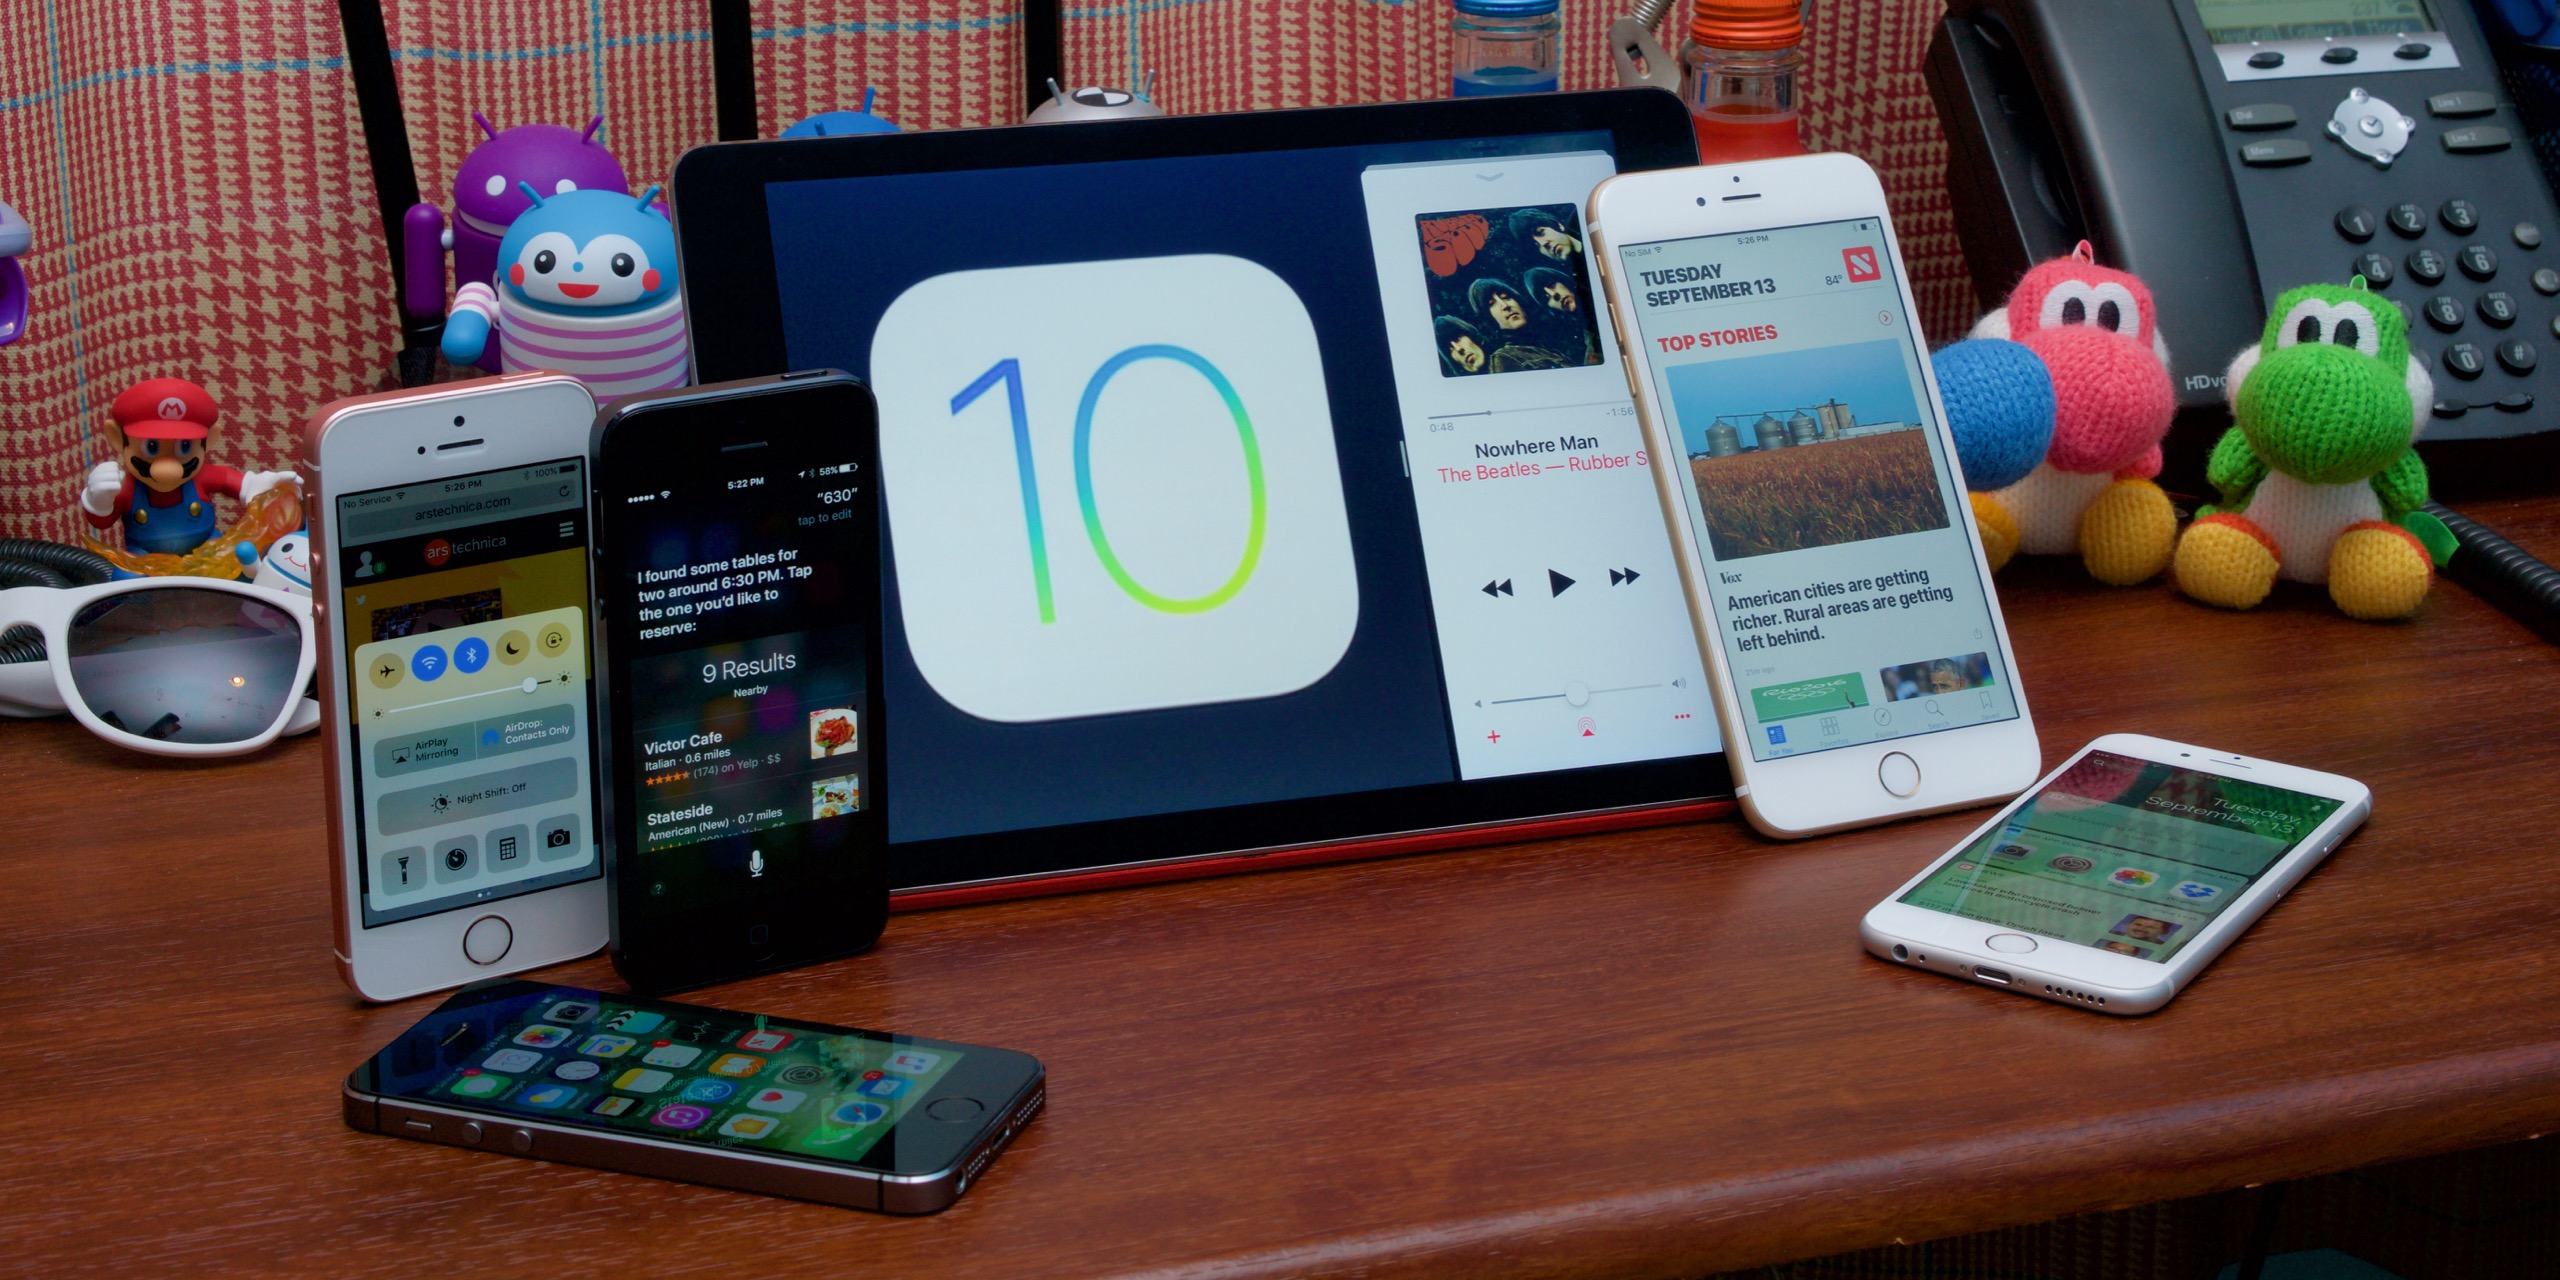 Một số thủ thuật và mẹo nhỏ hữu ích trên thiết bị iOS 10 – iPhone (Phần 1)